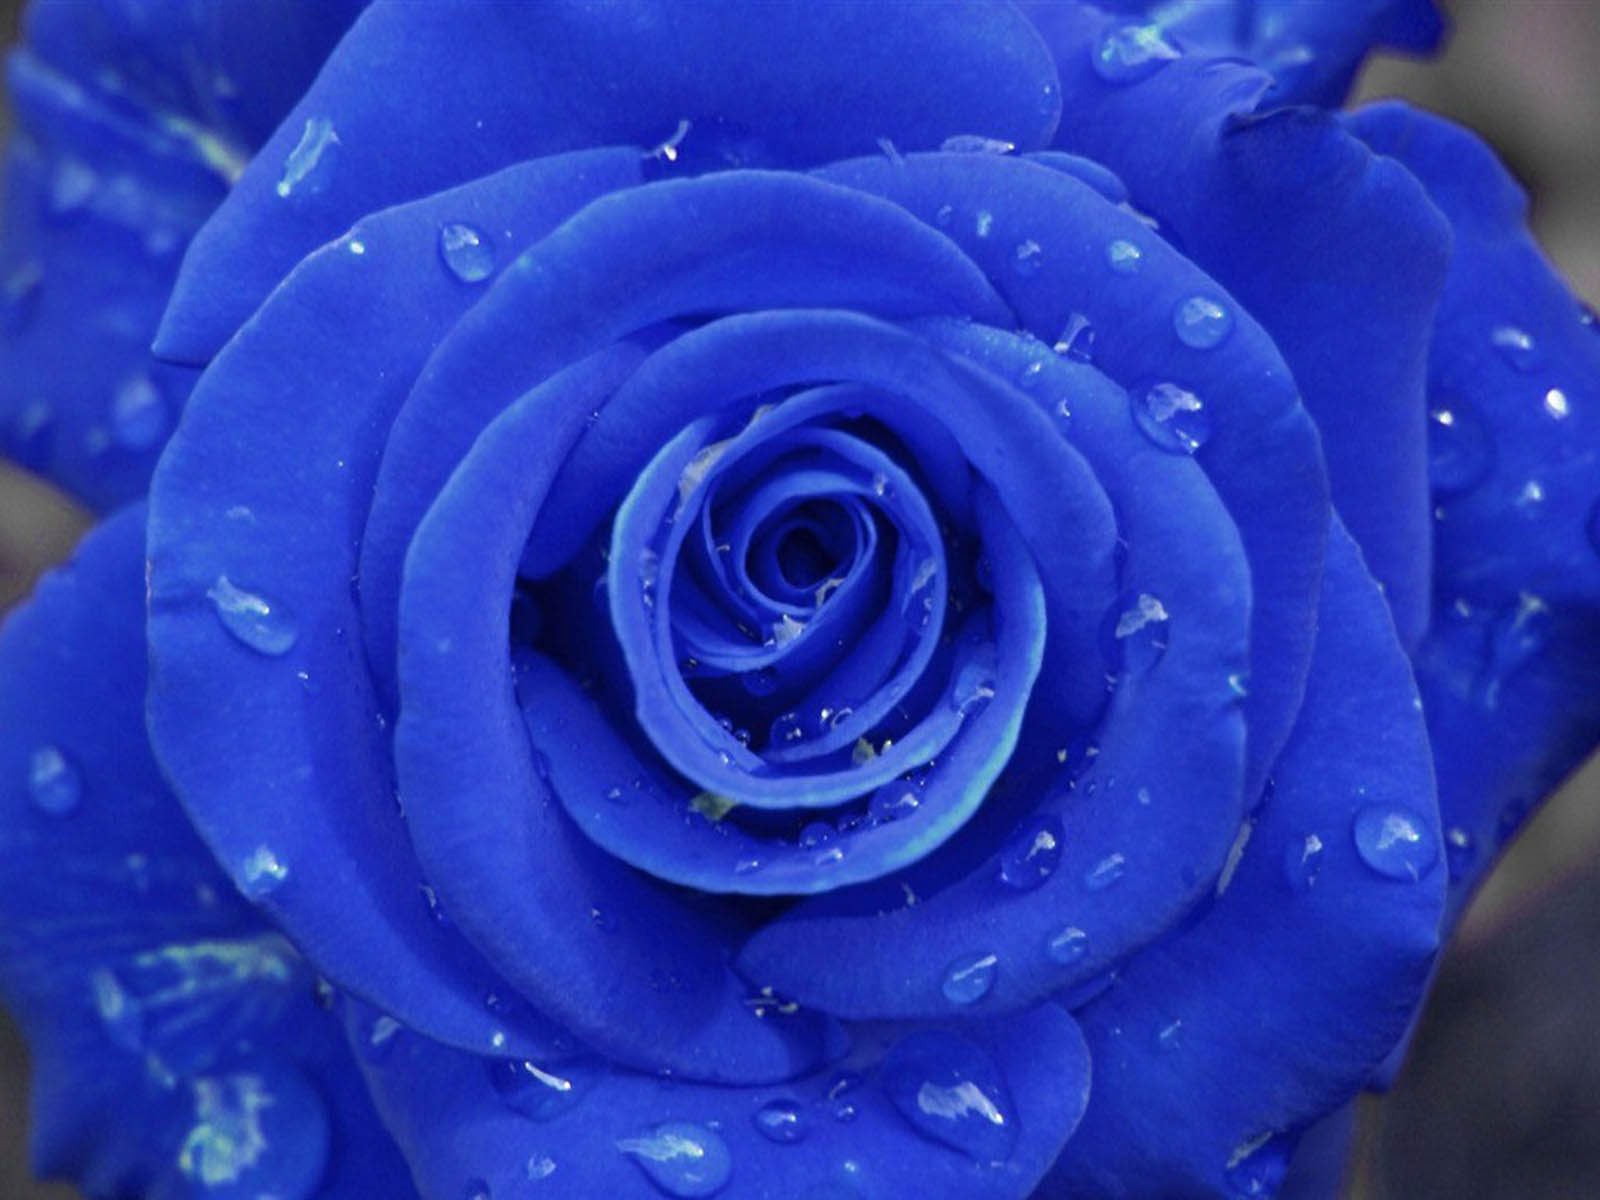 Blue Rose Wallpaper For Desktop Image Pictures Becuo